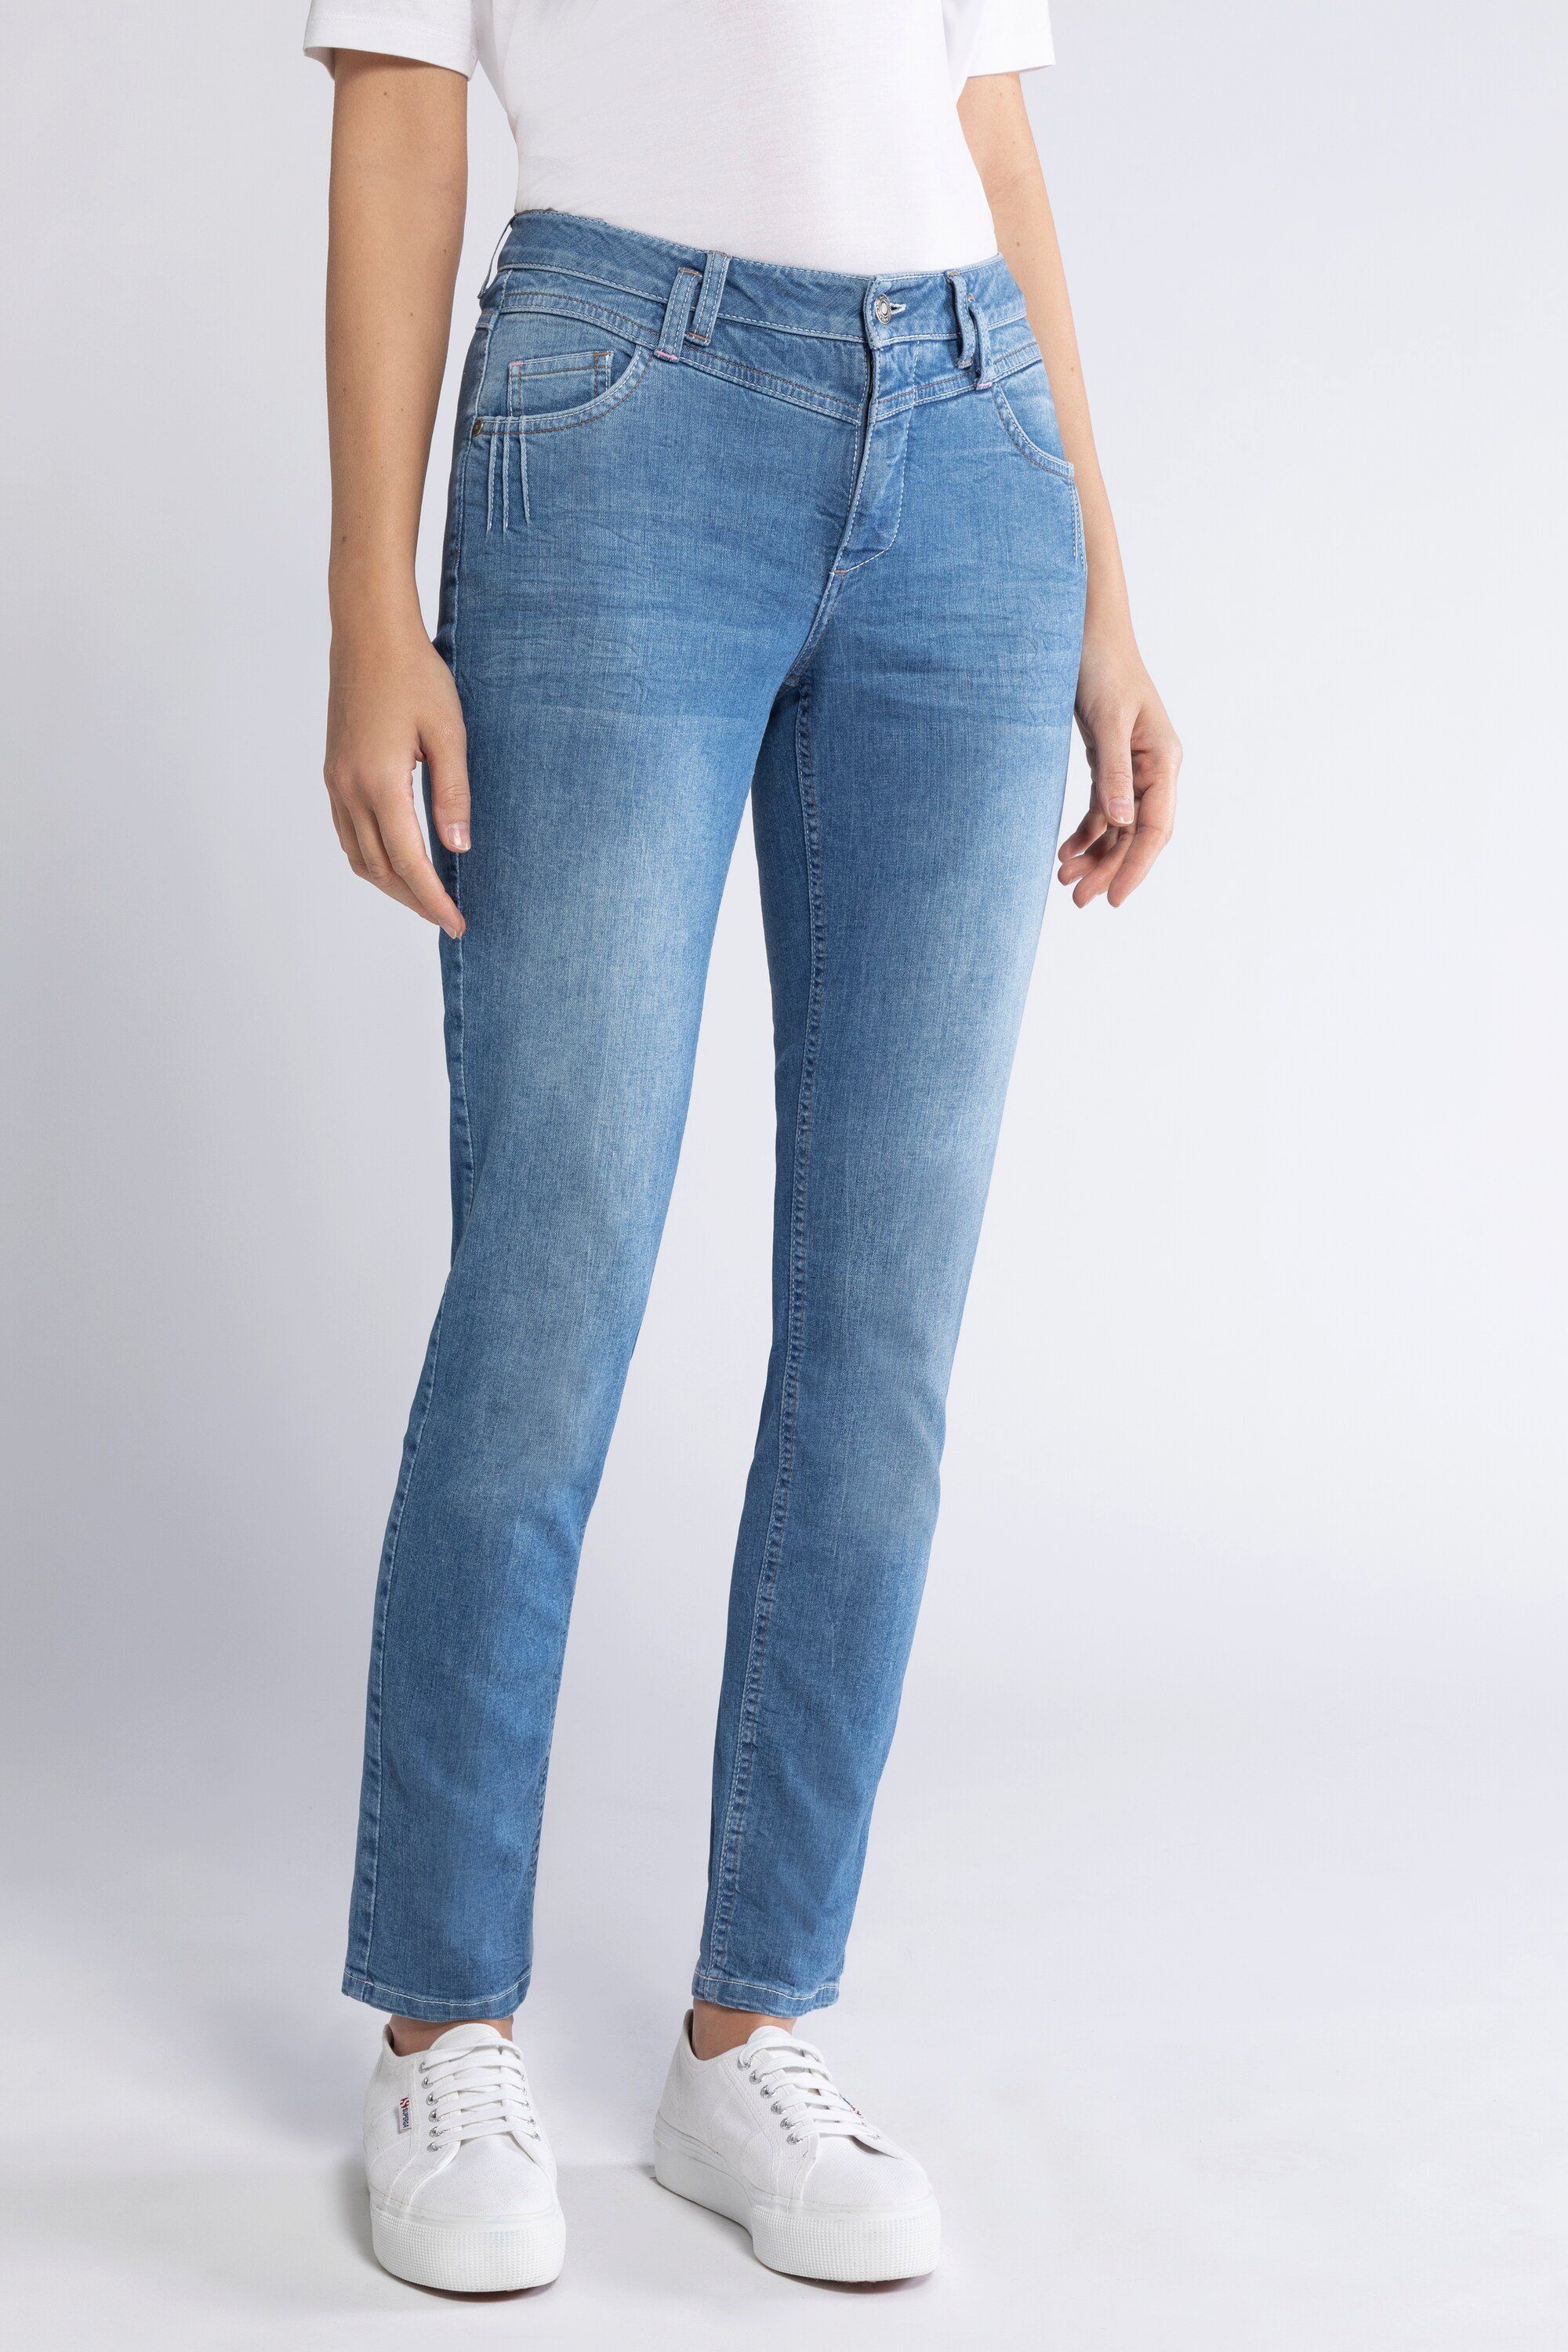 Gina Laura Denim Jeans in Blau Damen Bekleidung Jeans Jeans mit gerader Passform 